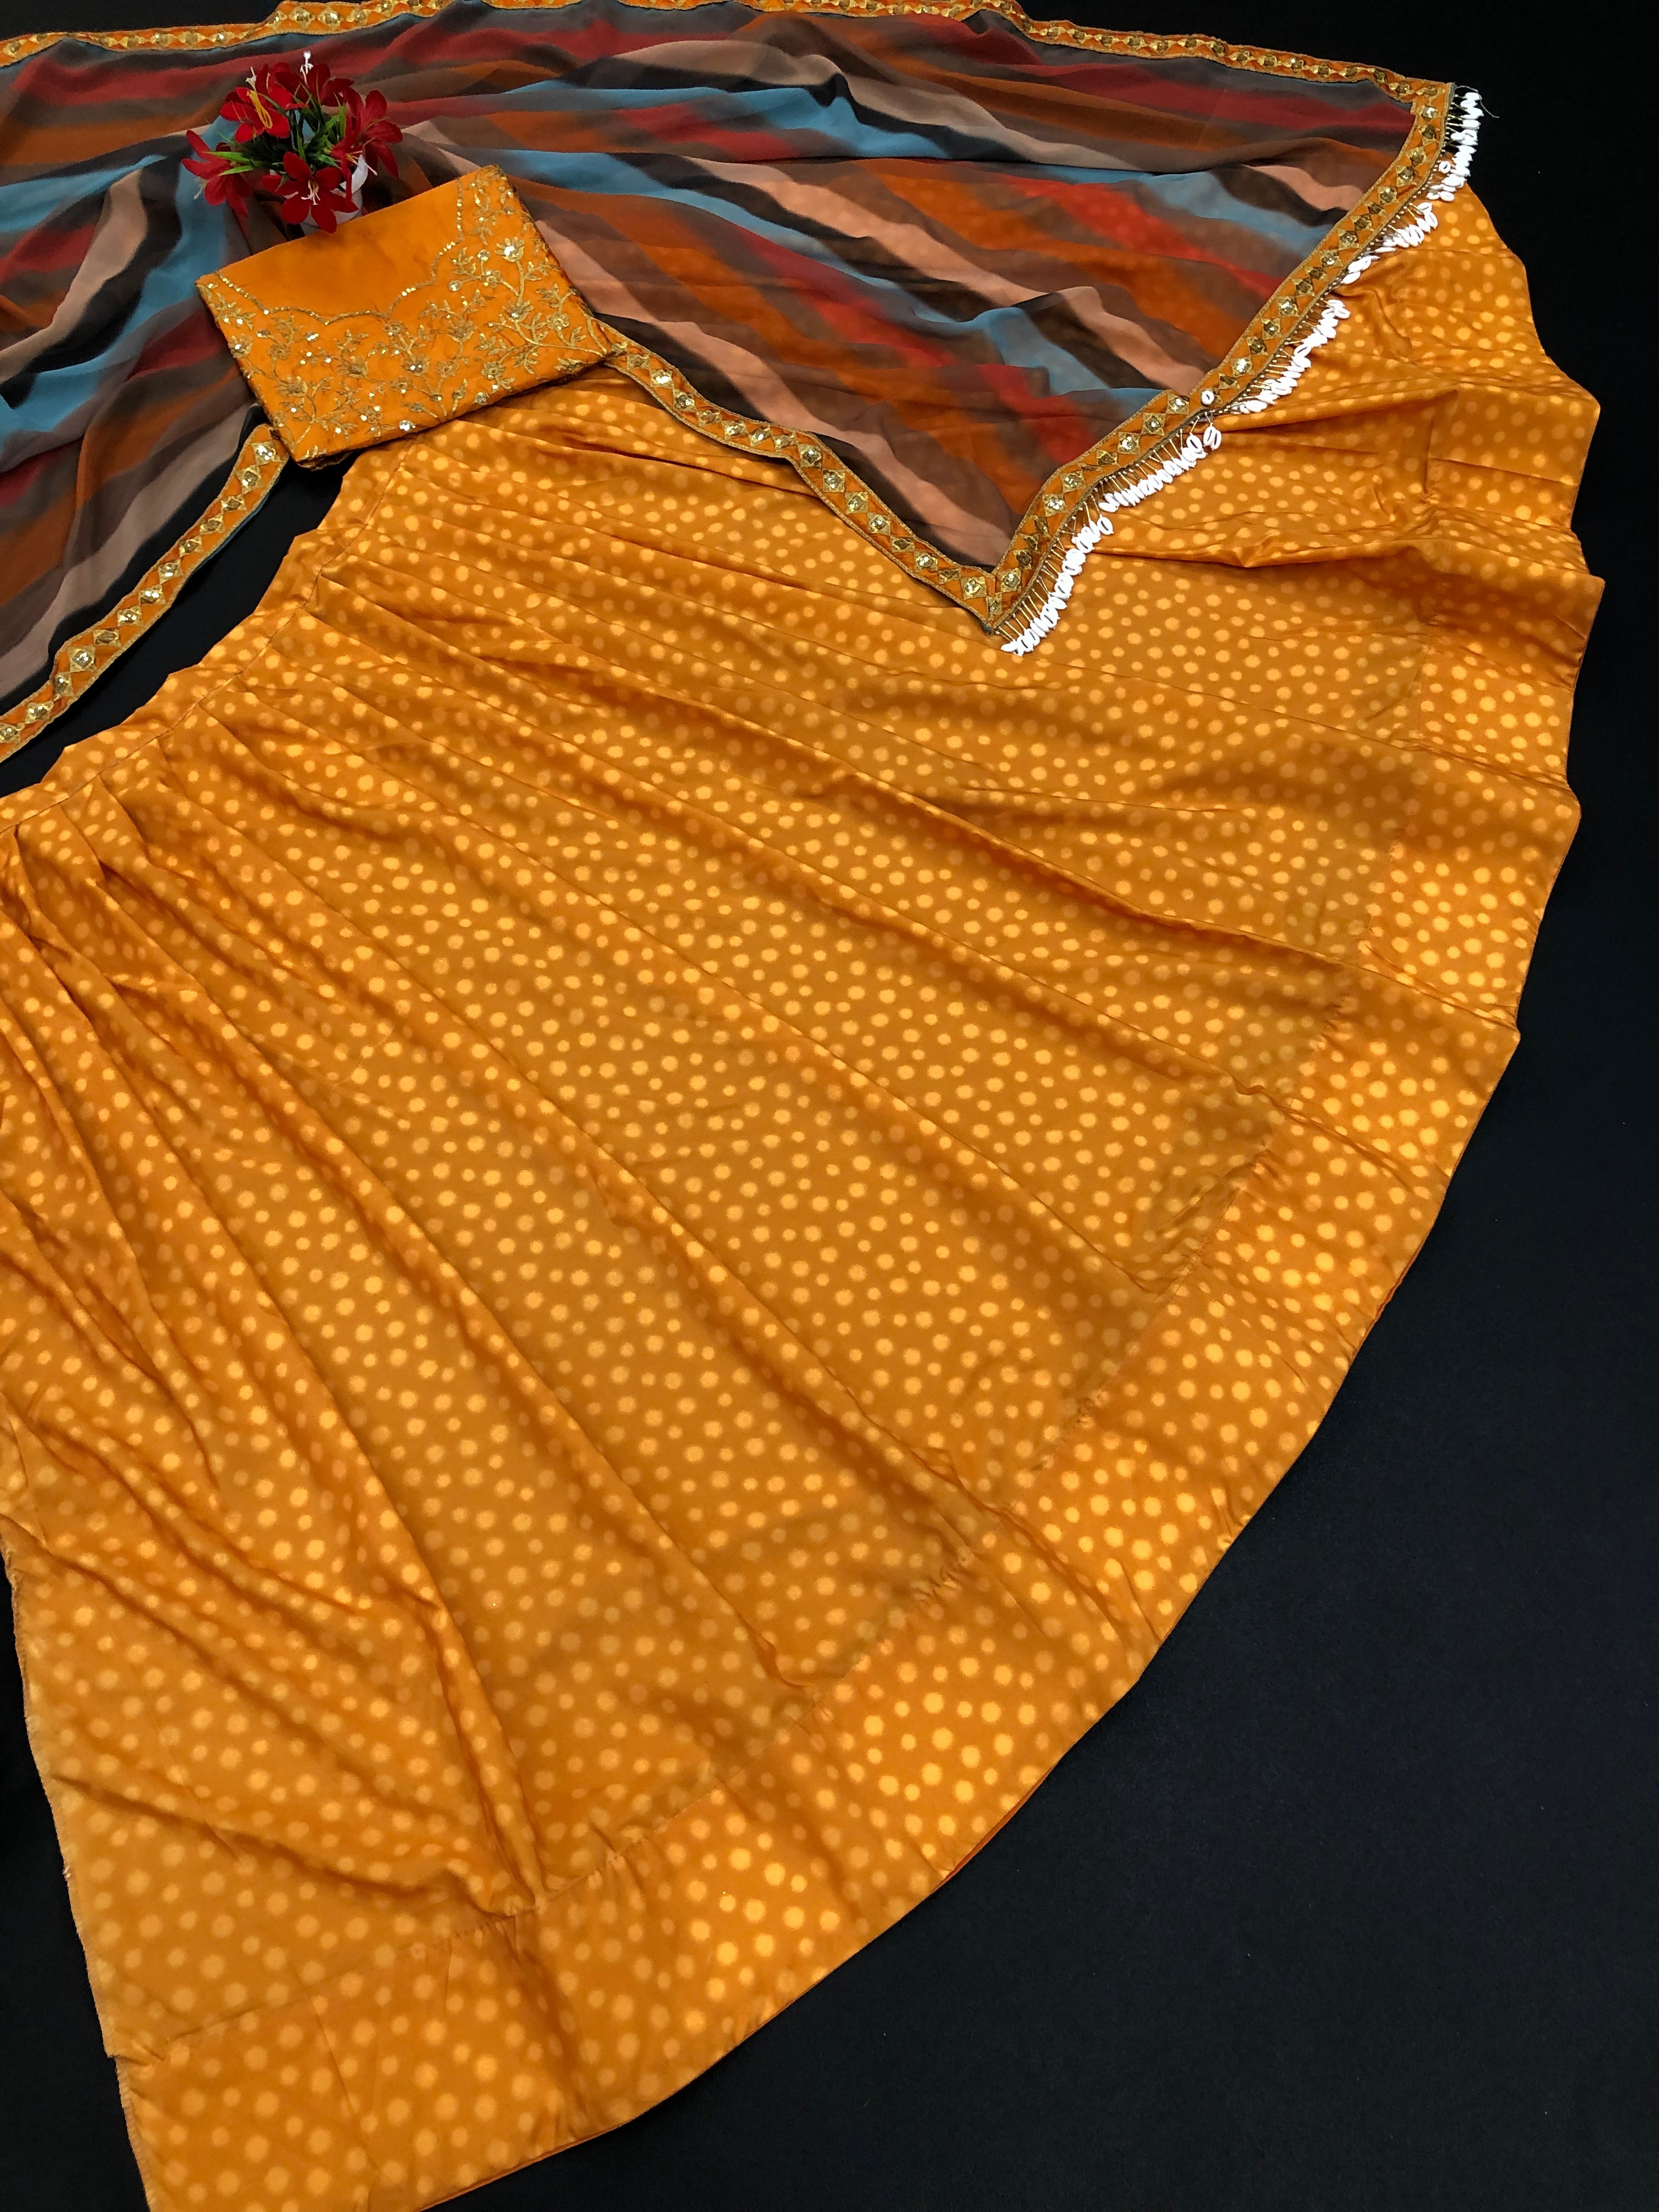 Orange Lehenga Choli In Butter Crepe Silk With Digital Print